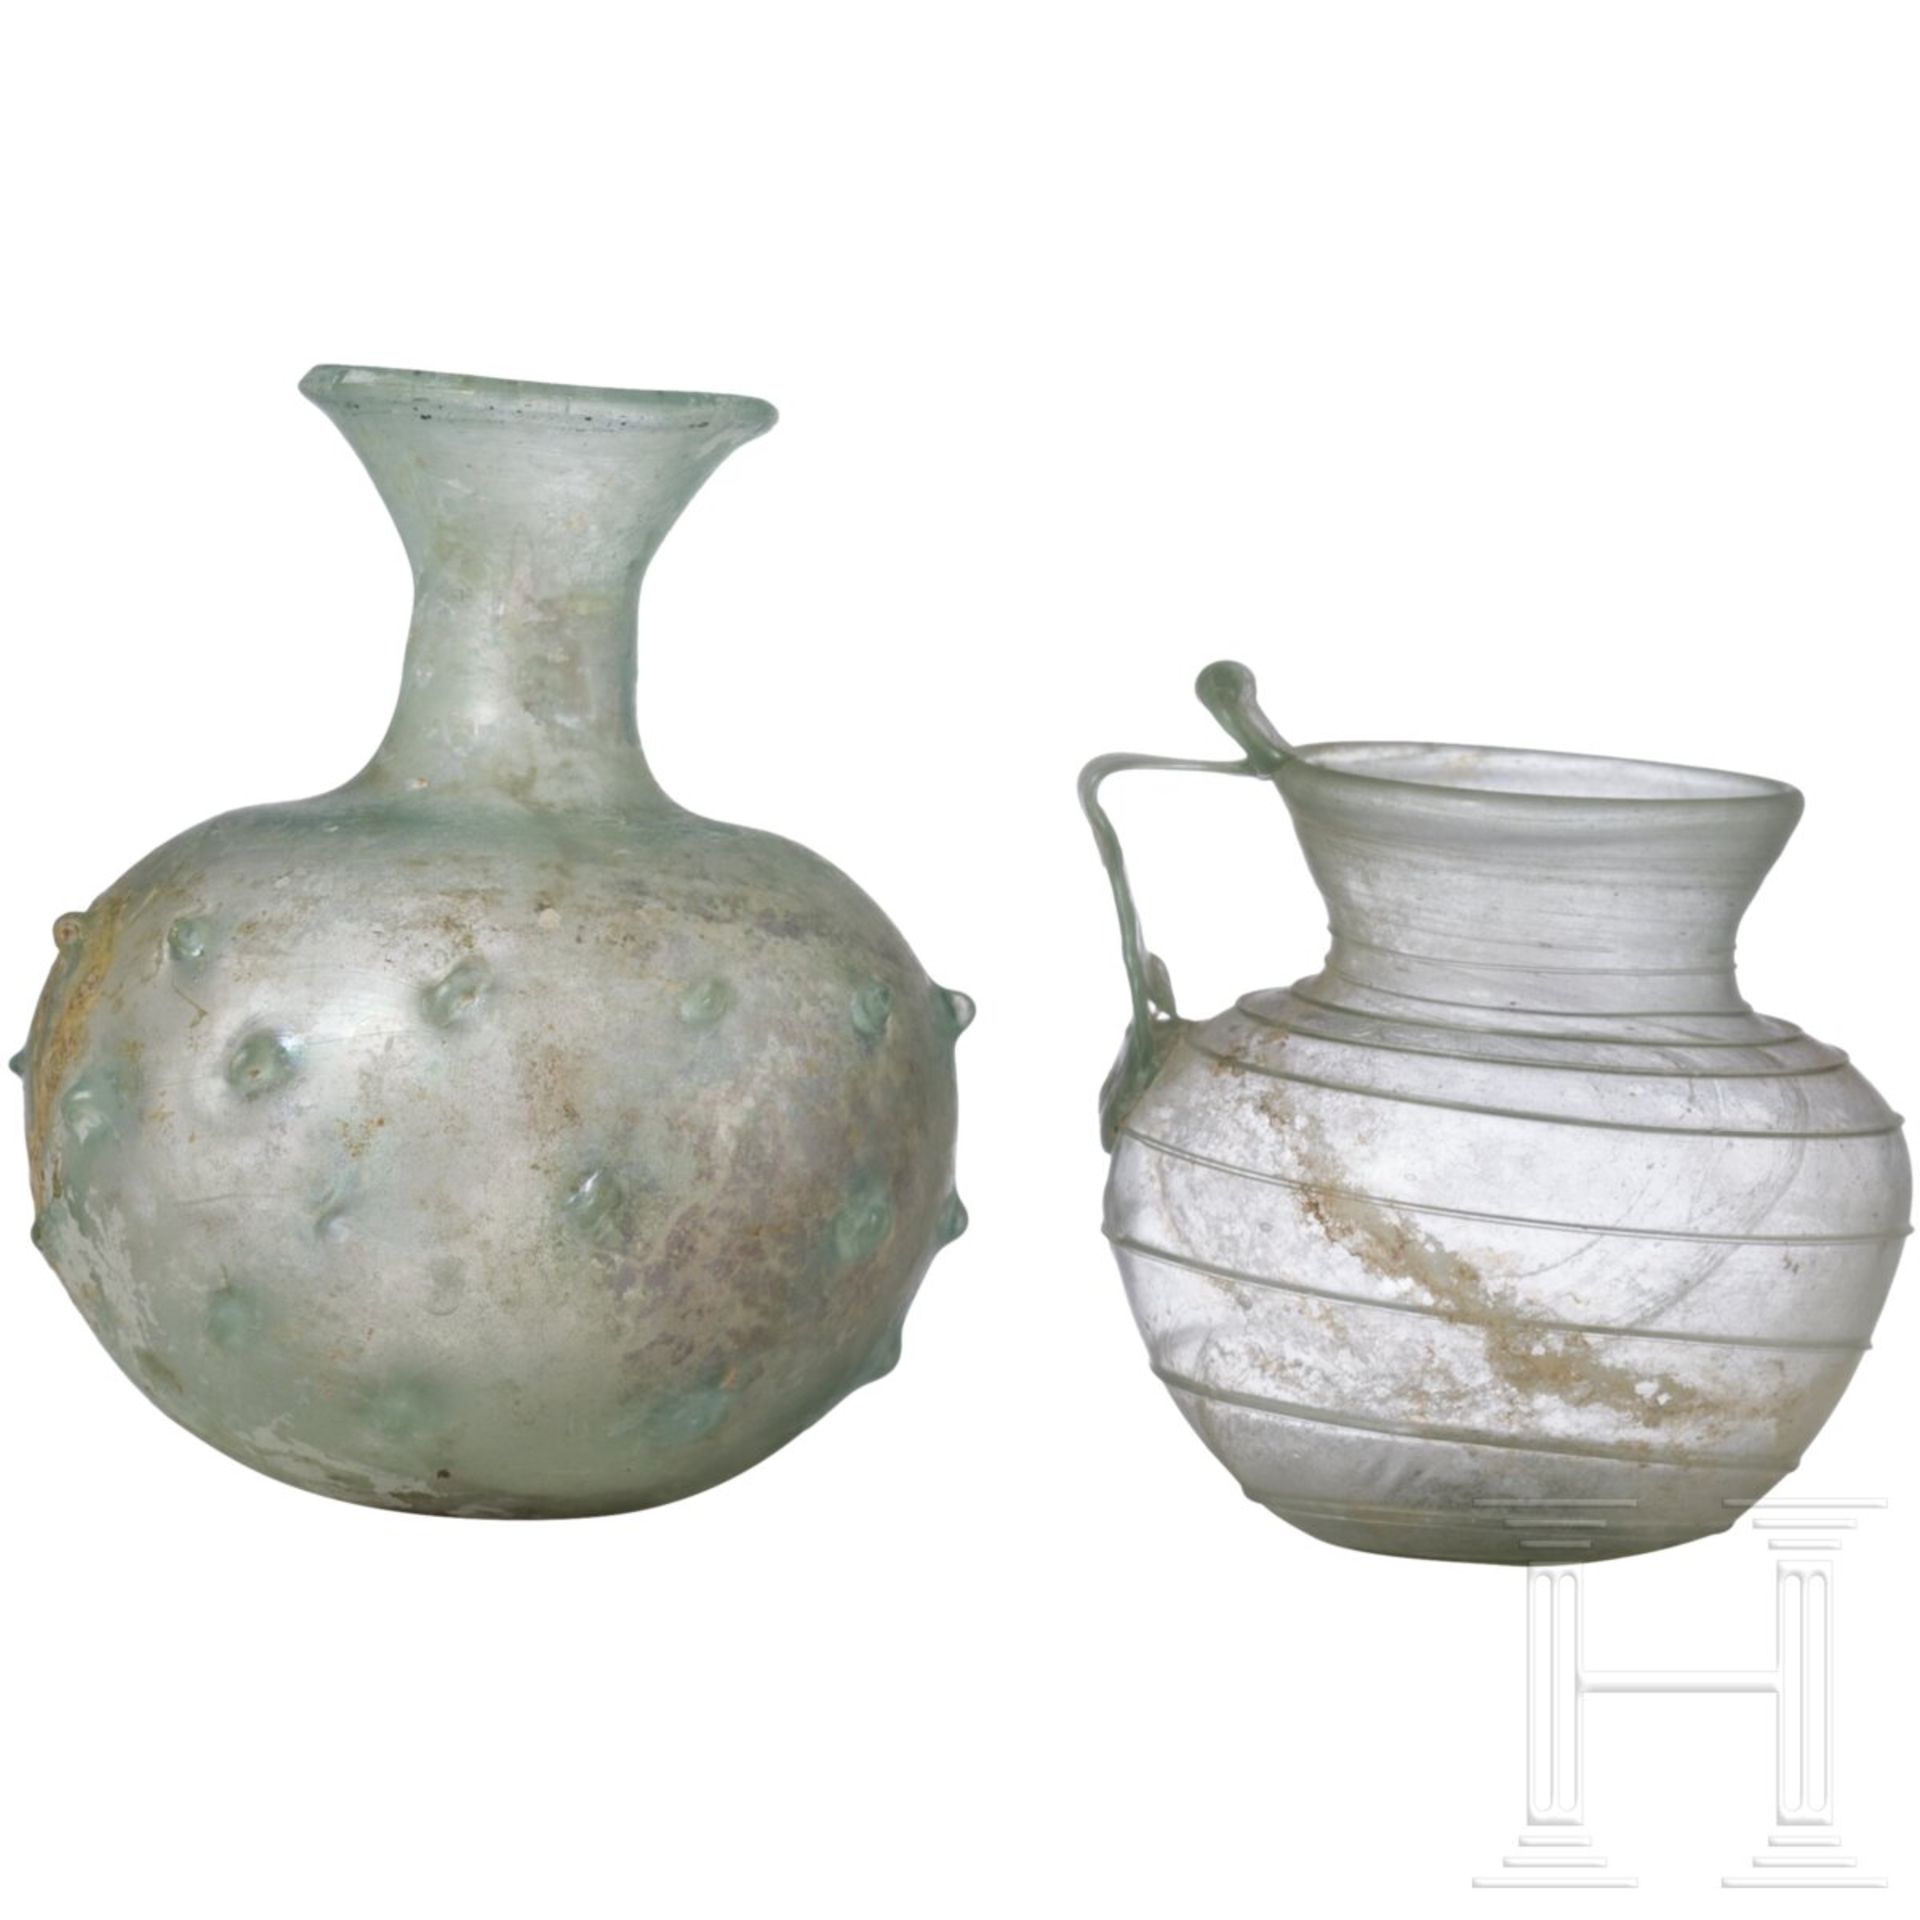 Drei Glasgefäße und eine große Glasflasche, römisch, 3./4. Jhdt. (Flasche später) - Image 5 of 5